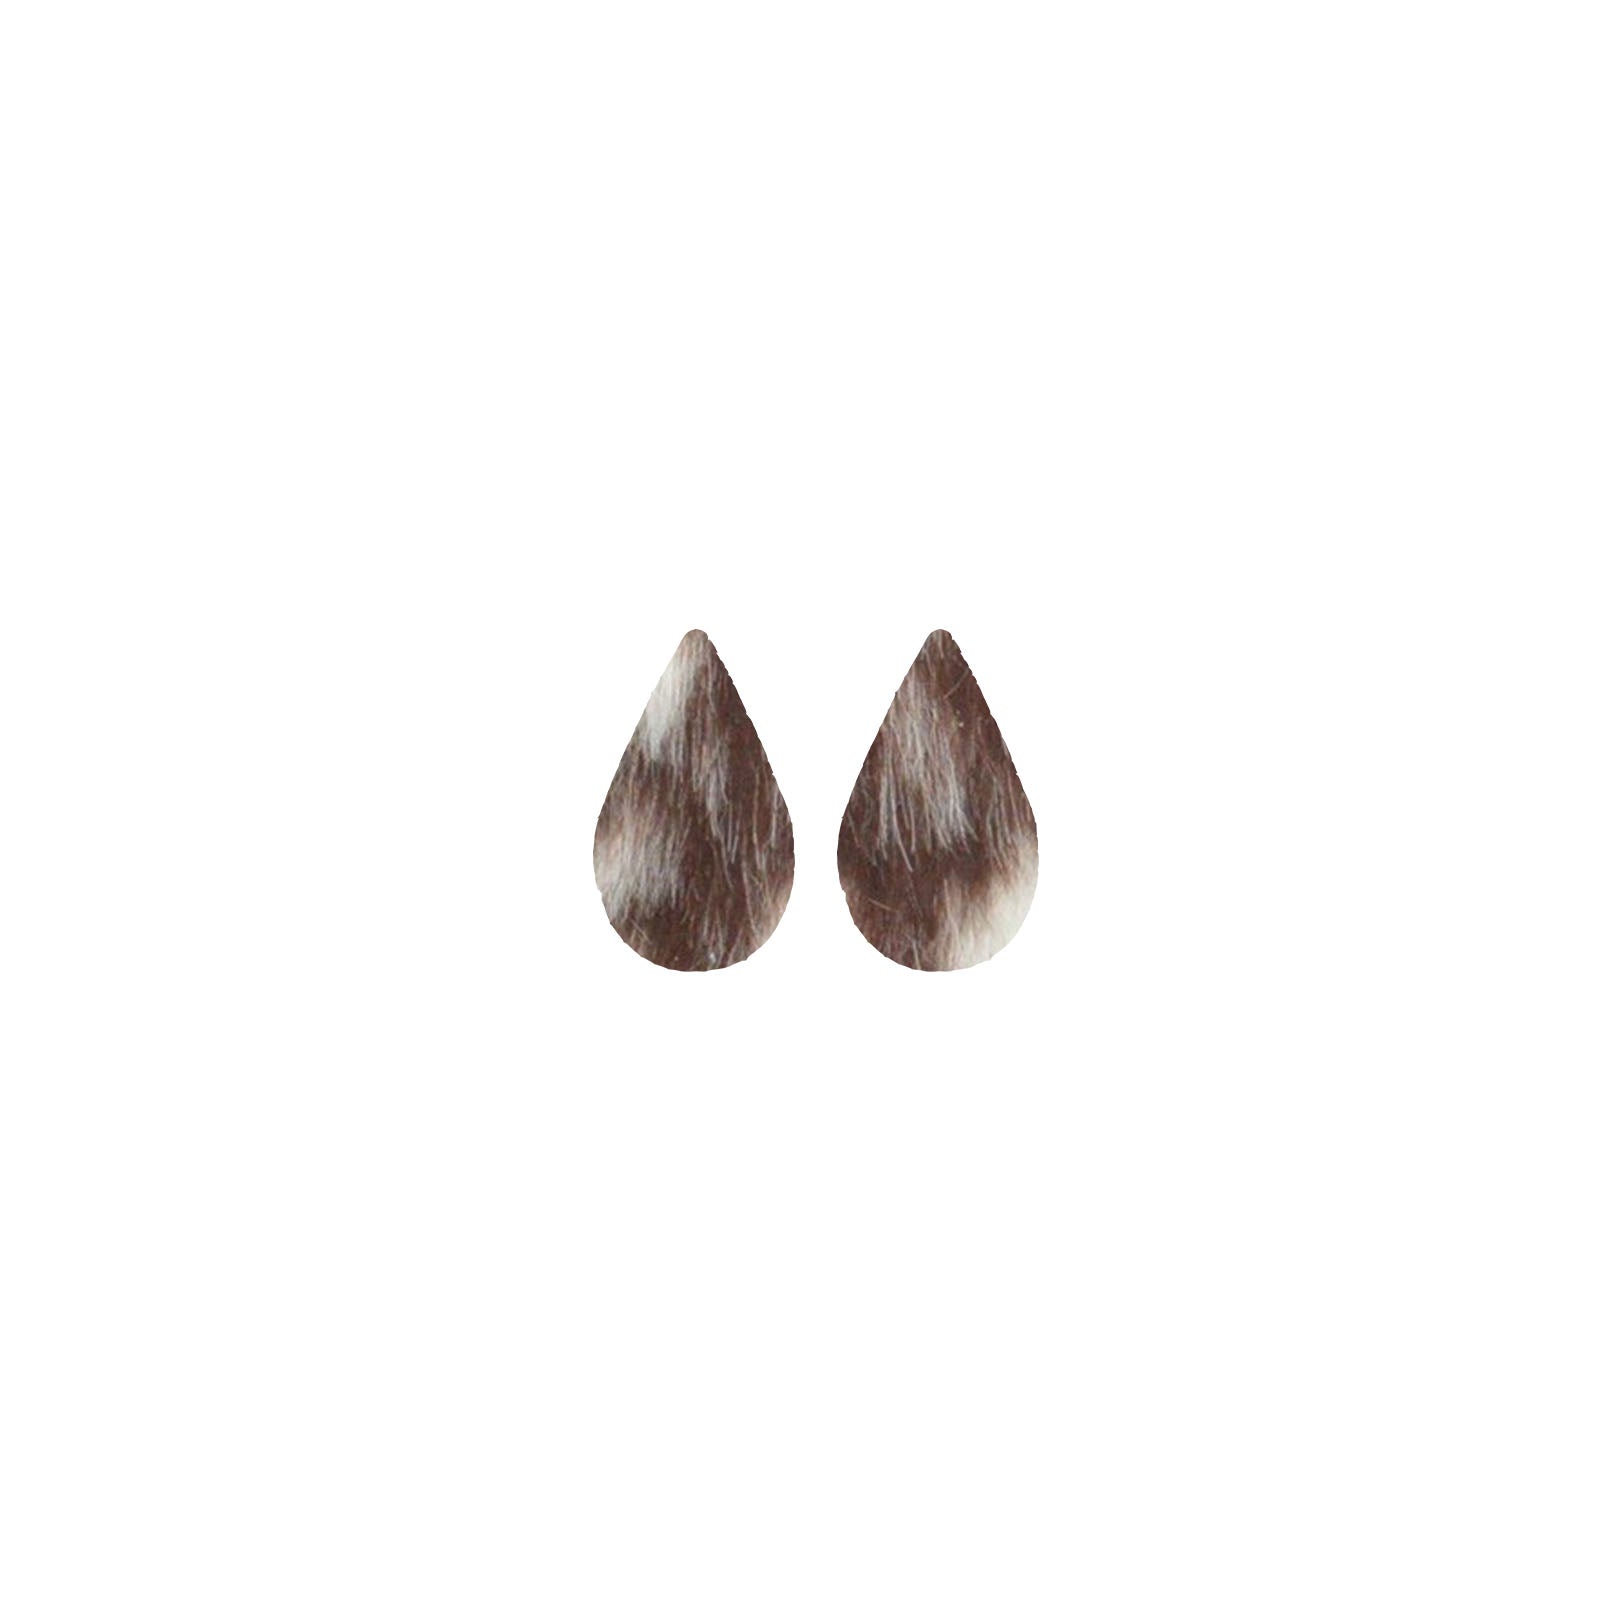 Bi-Color Medium Brown and Off-White Hair On Die Cut Earrings, Mini Teardrop | The Leather Guy